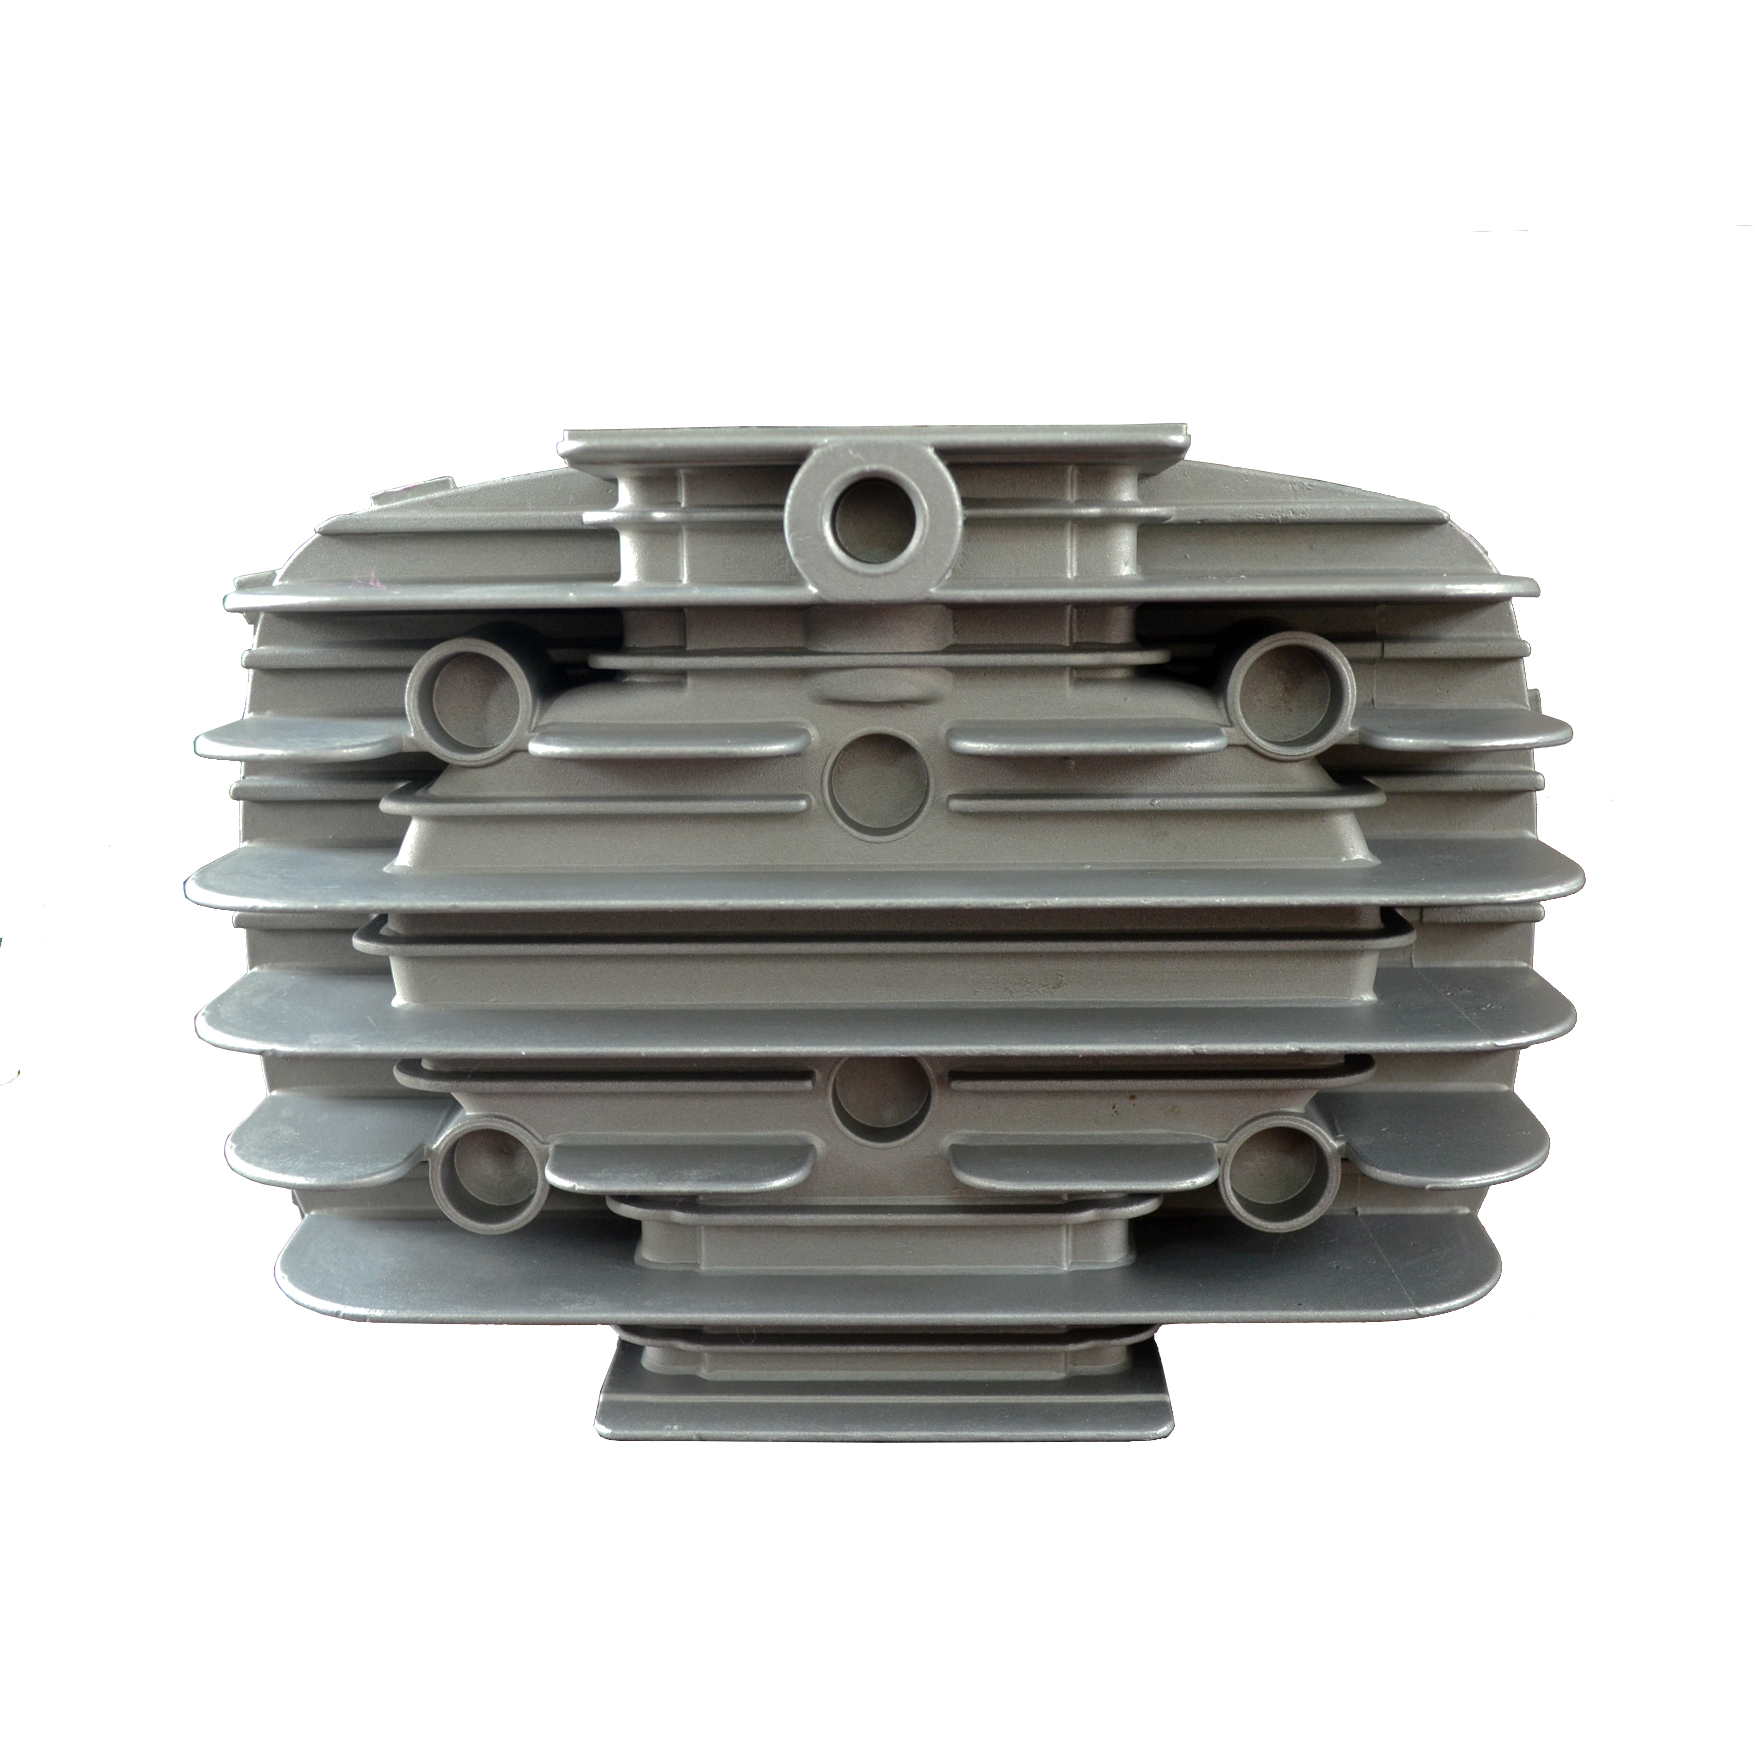 aer pressor cylindrici cover-die casting- aluminium